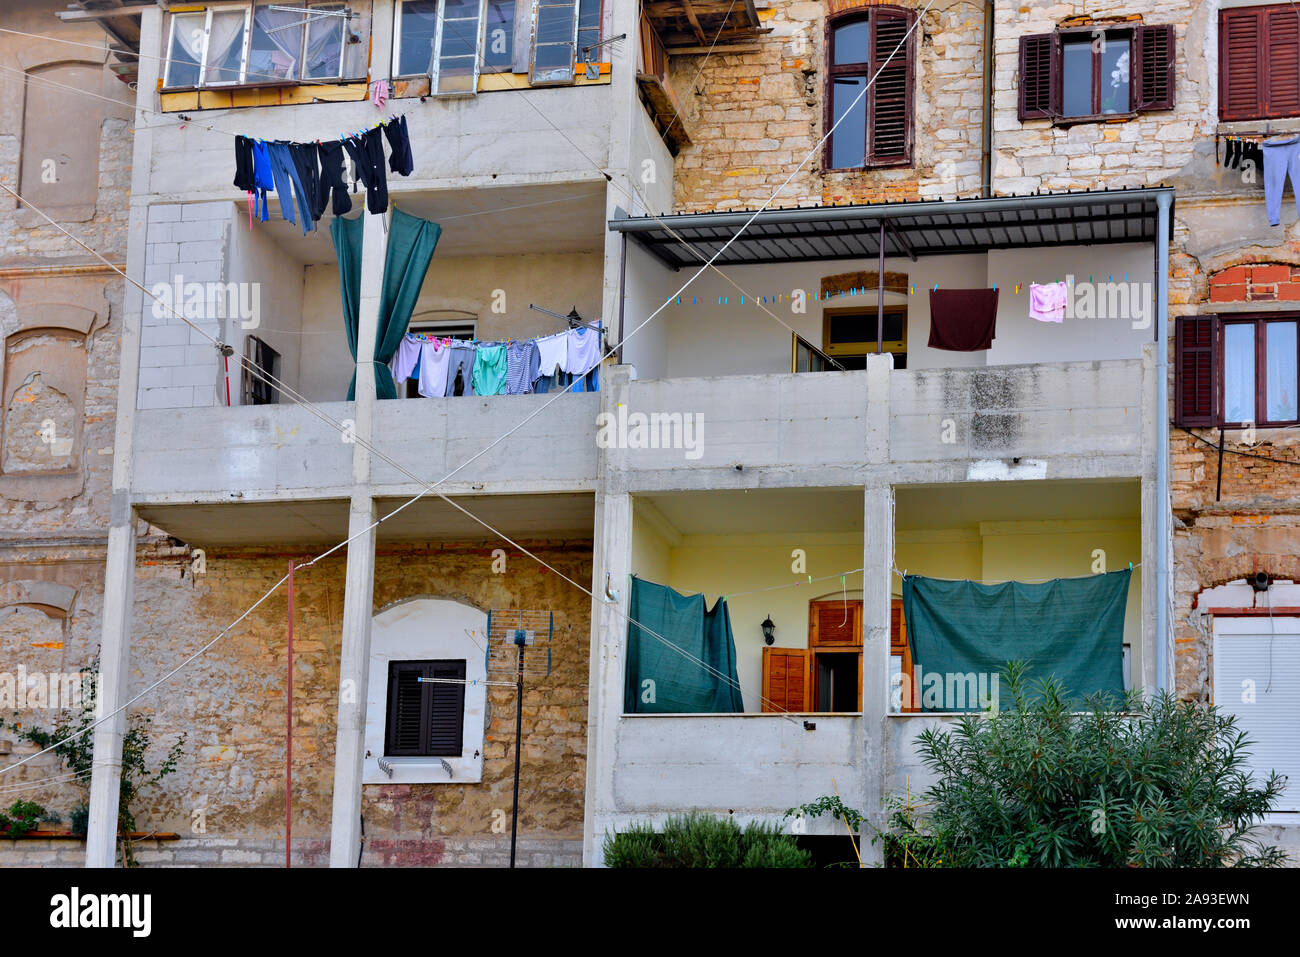 Mehrstöckigen Appartementhaus mit mehreren Balkonen viele hängende Wäsche zu trocknen Stockfoto